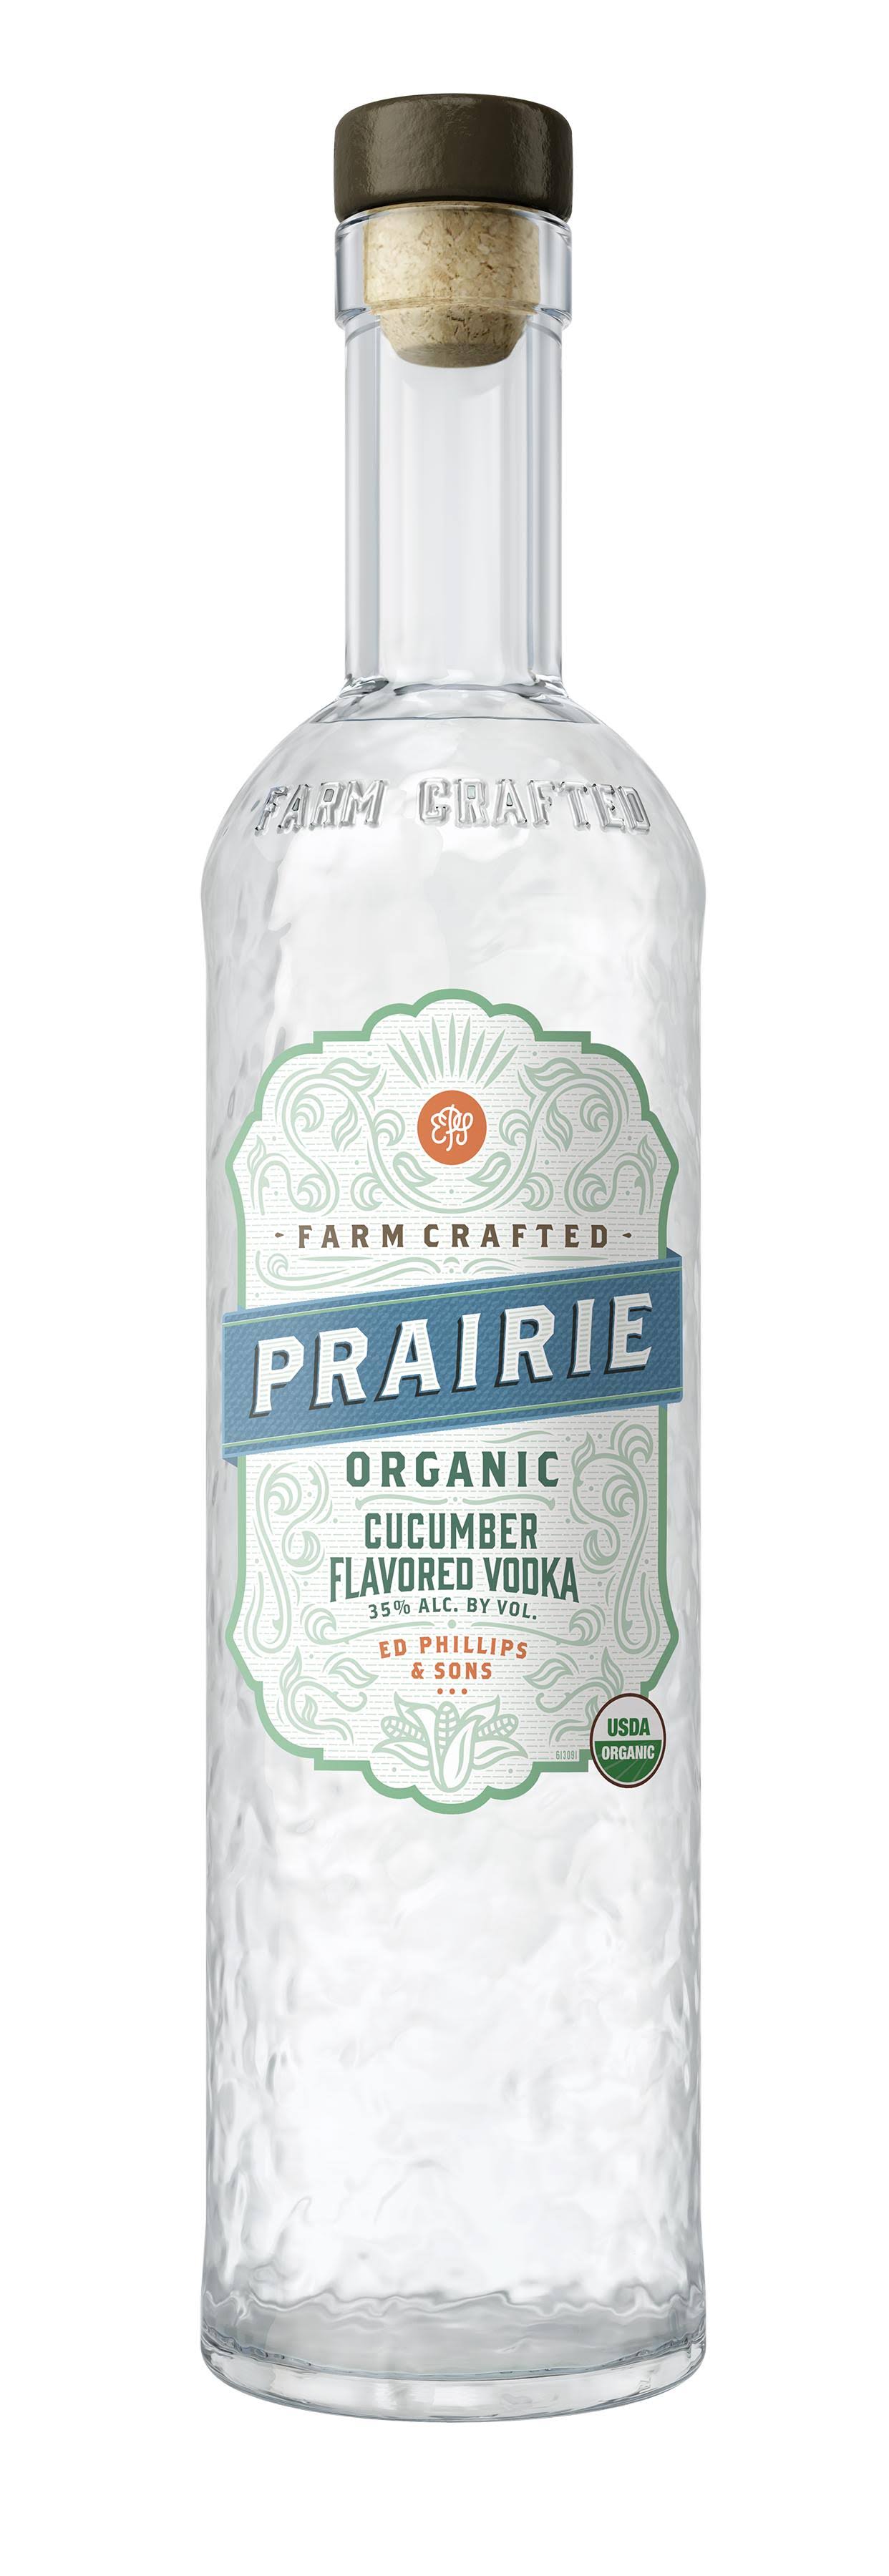 Prairie Handcrafted Vodka - Cucumber Flavored